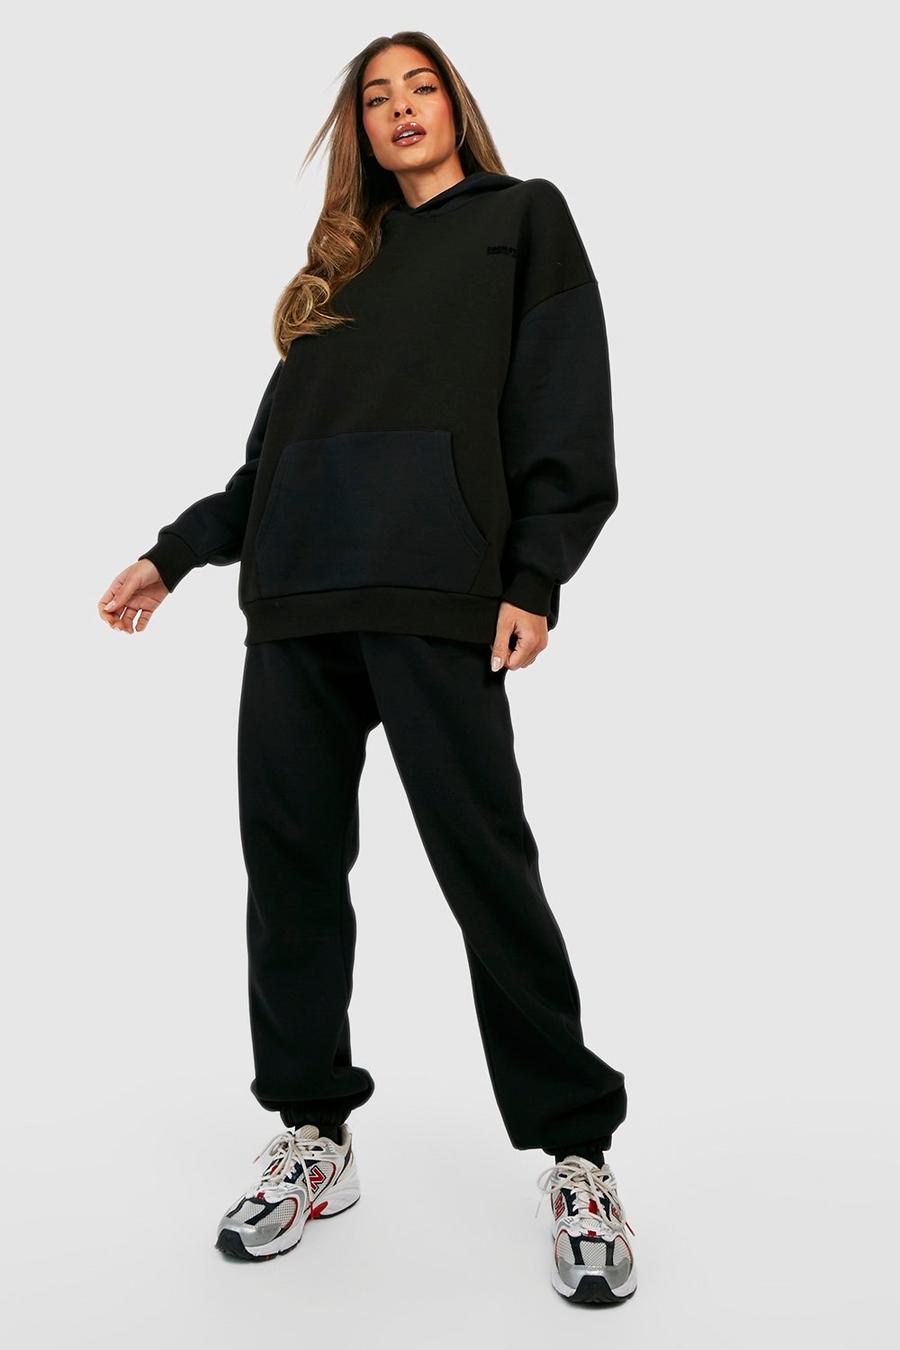 Pantalón deportivo Premium con botamanga y eslogan aterciopelado, Black